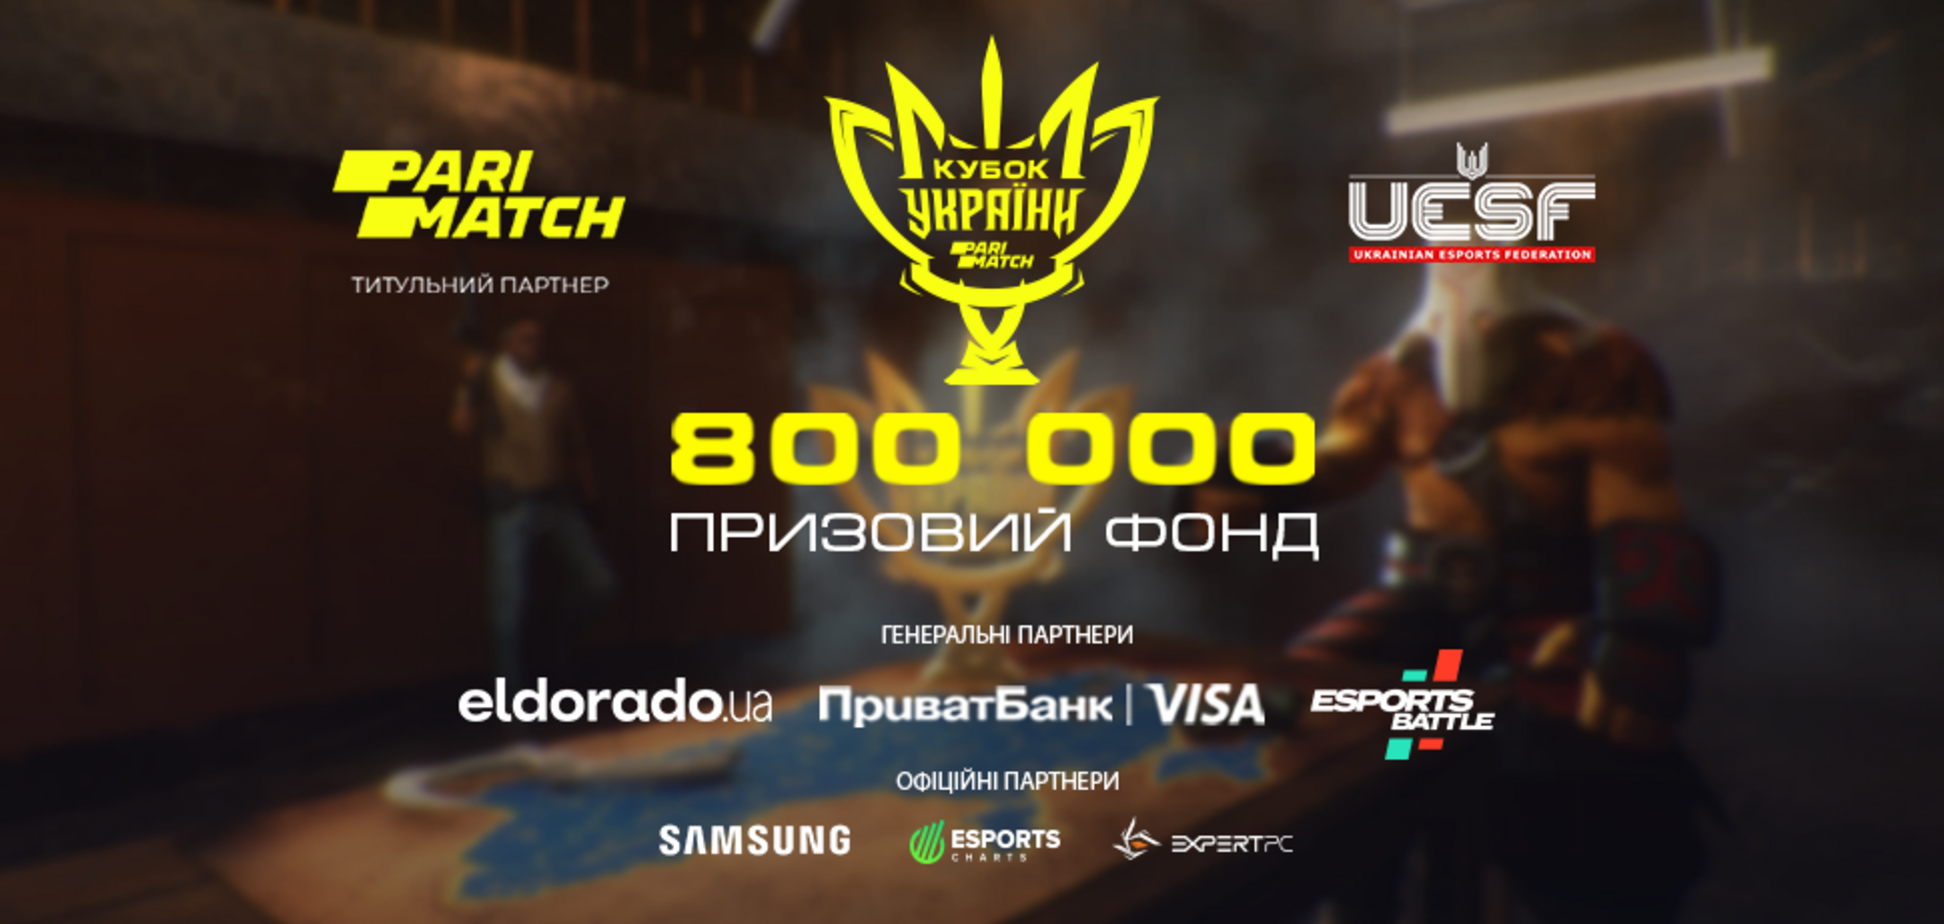 Регистрация на Кубок Украины 2022 по дисциплинам CS:GO и Dota 2 продолжается!